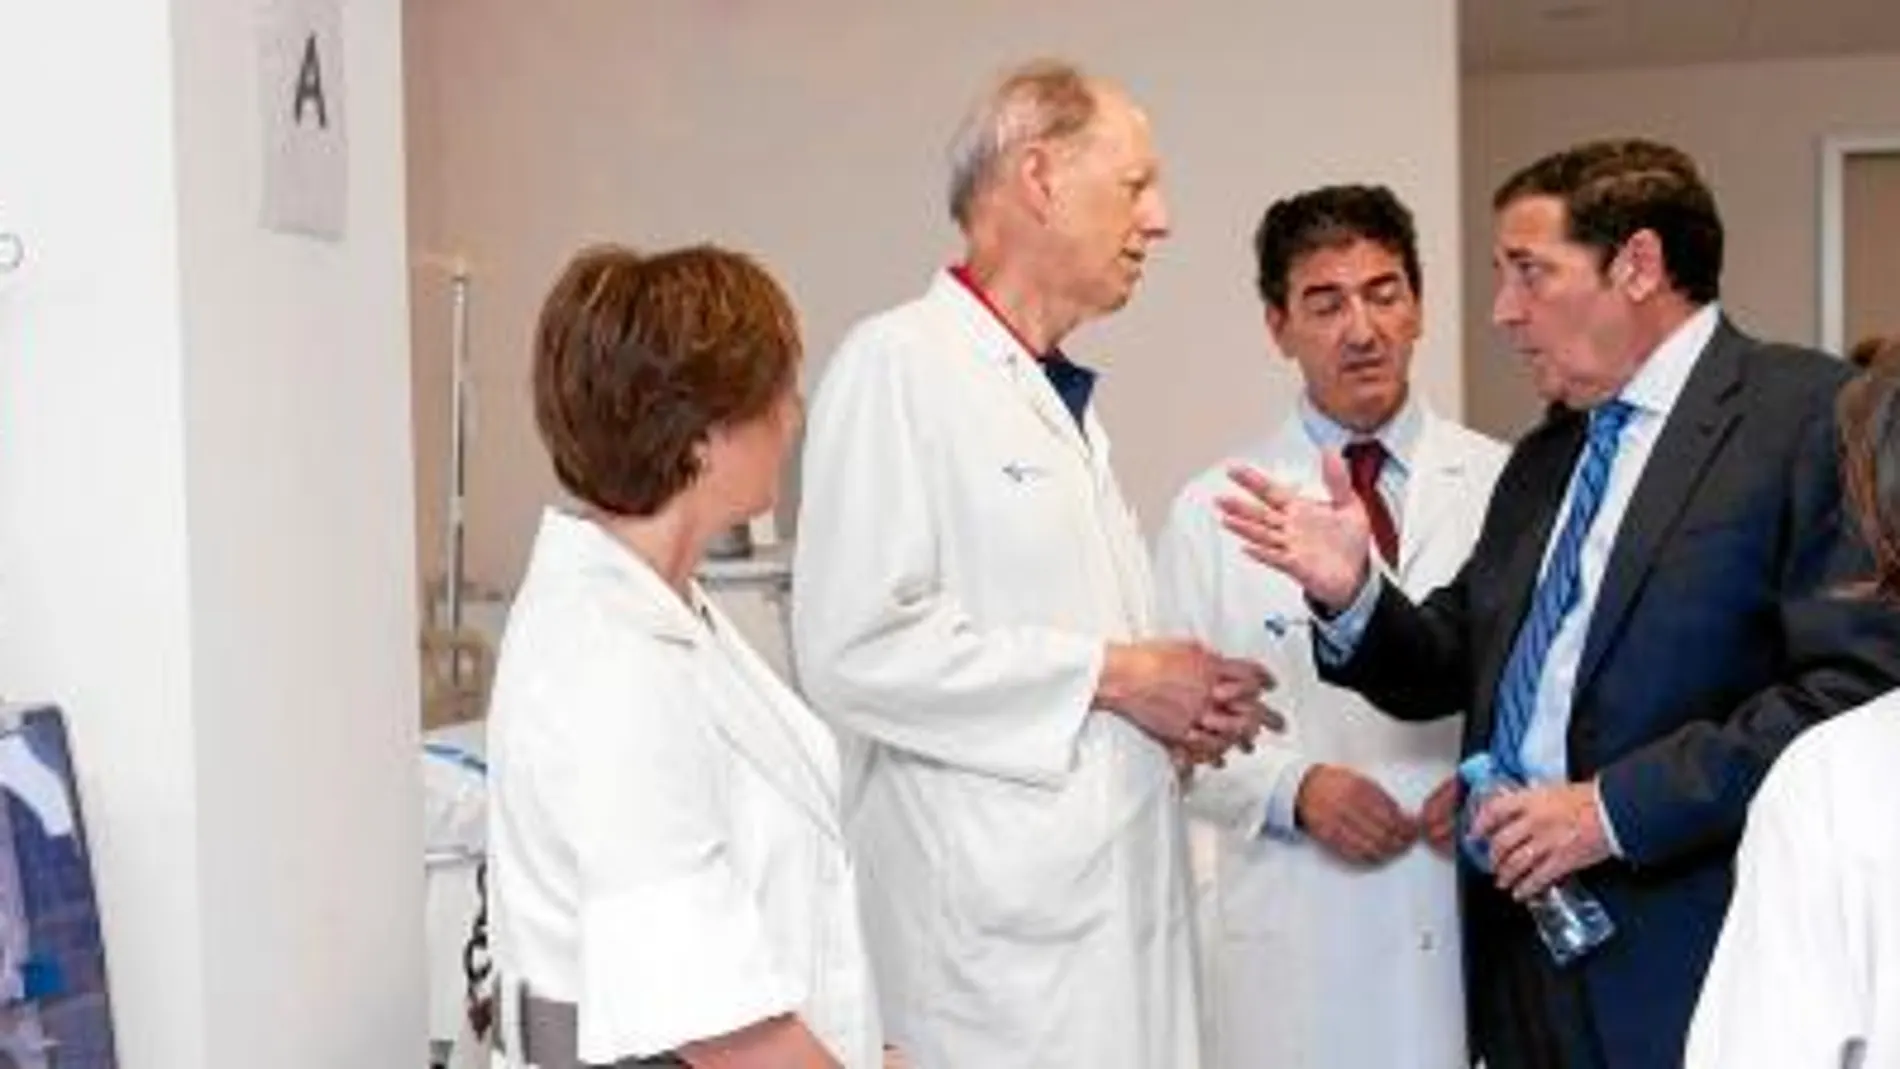 El consejero de Sanitad, Antonio María Sáez Aguado, visita a médicos de Atención Primaria de Burgos